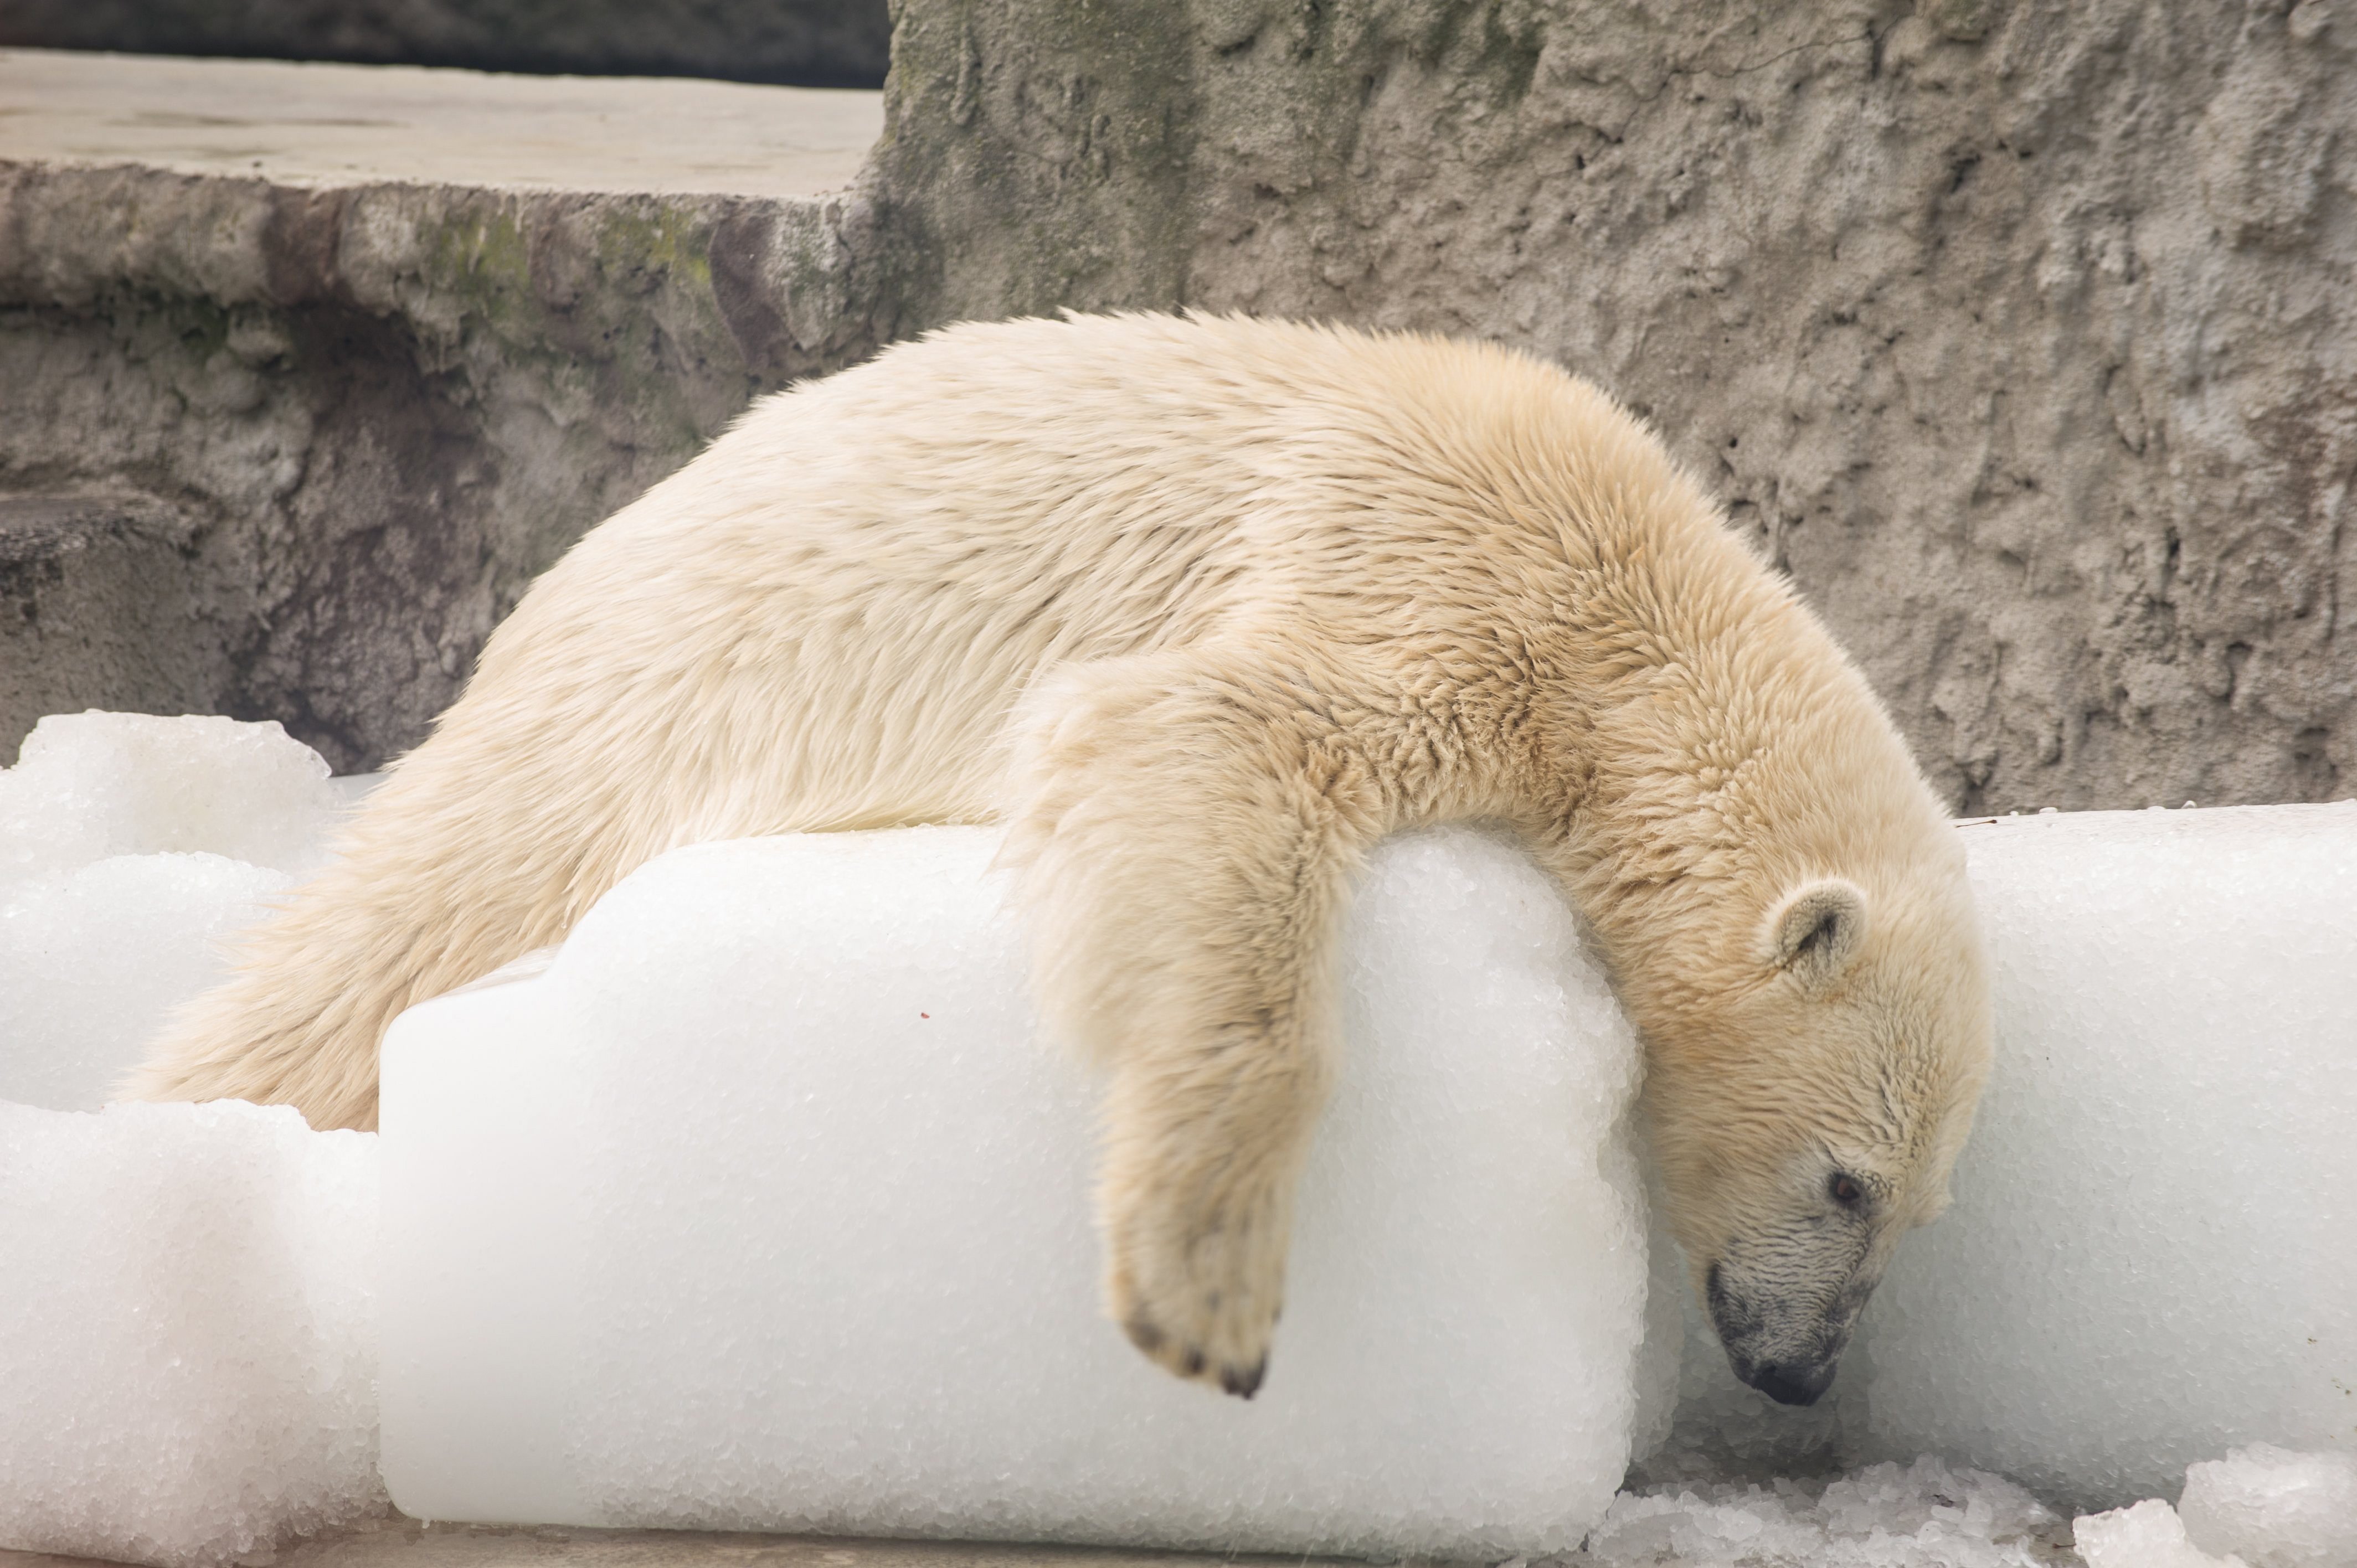 A század végére kihalhatnak a jegesmedvék a klímaváltozás miatt